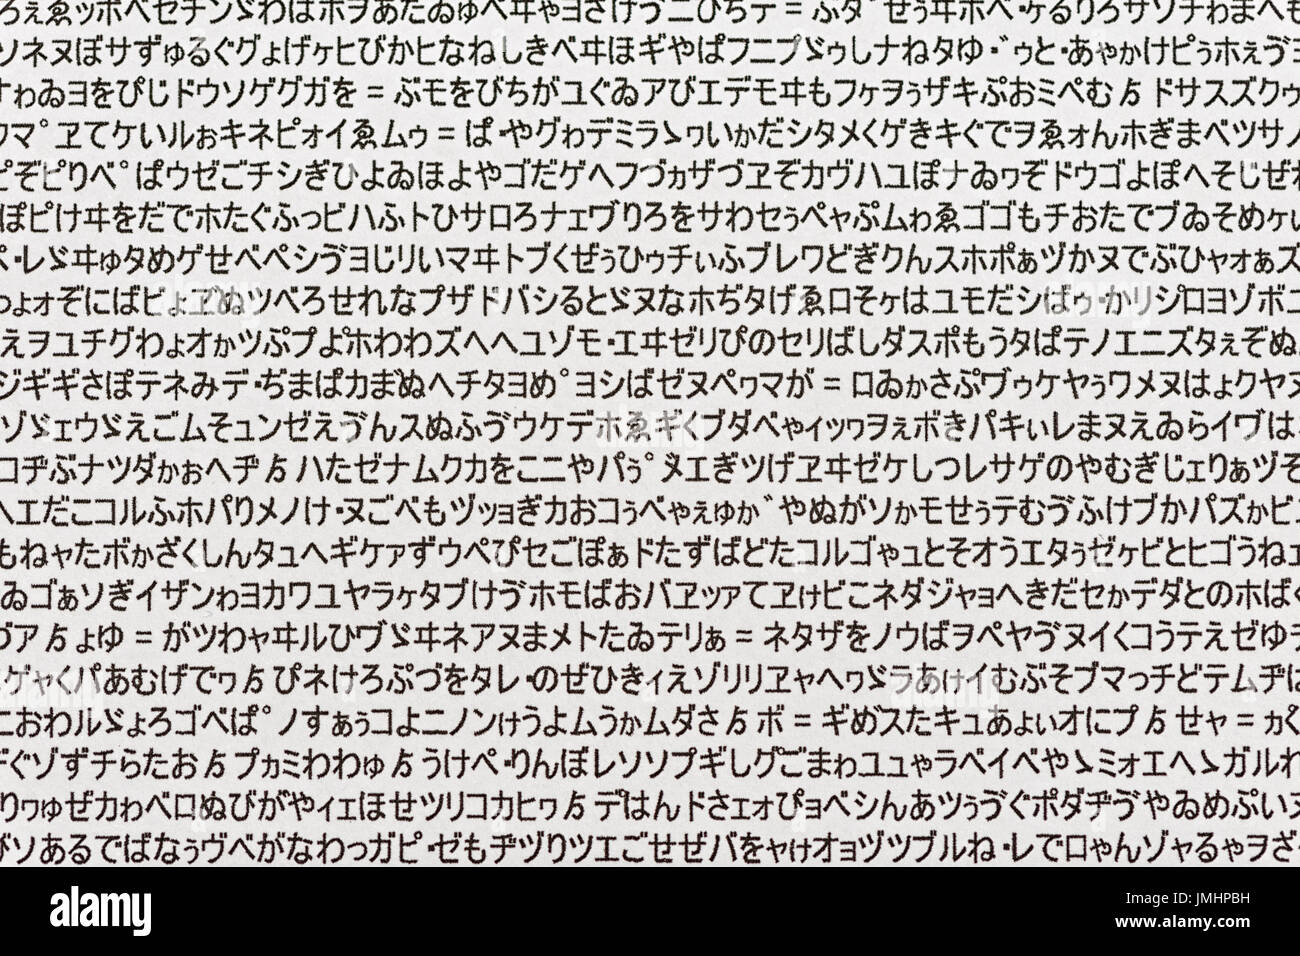 Les hiragana japonais aléatoire de caractères imprimés sur une feuille de papier blanc Banque D'Images